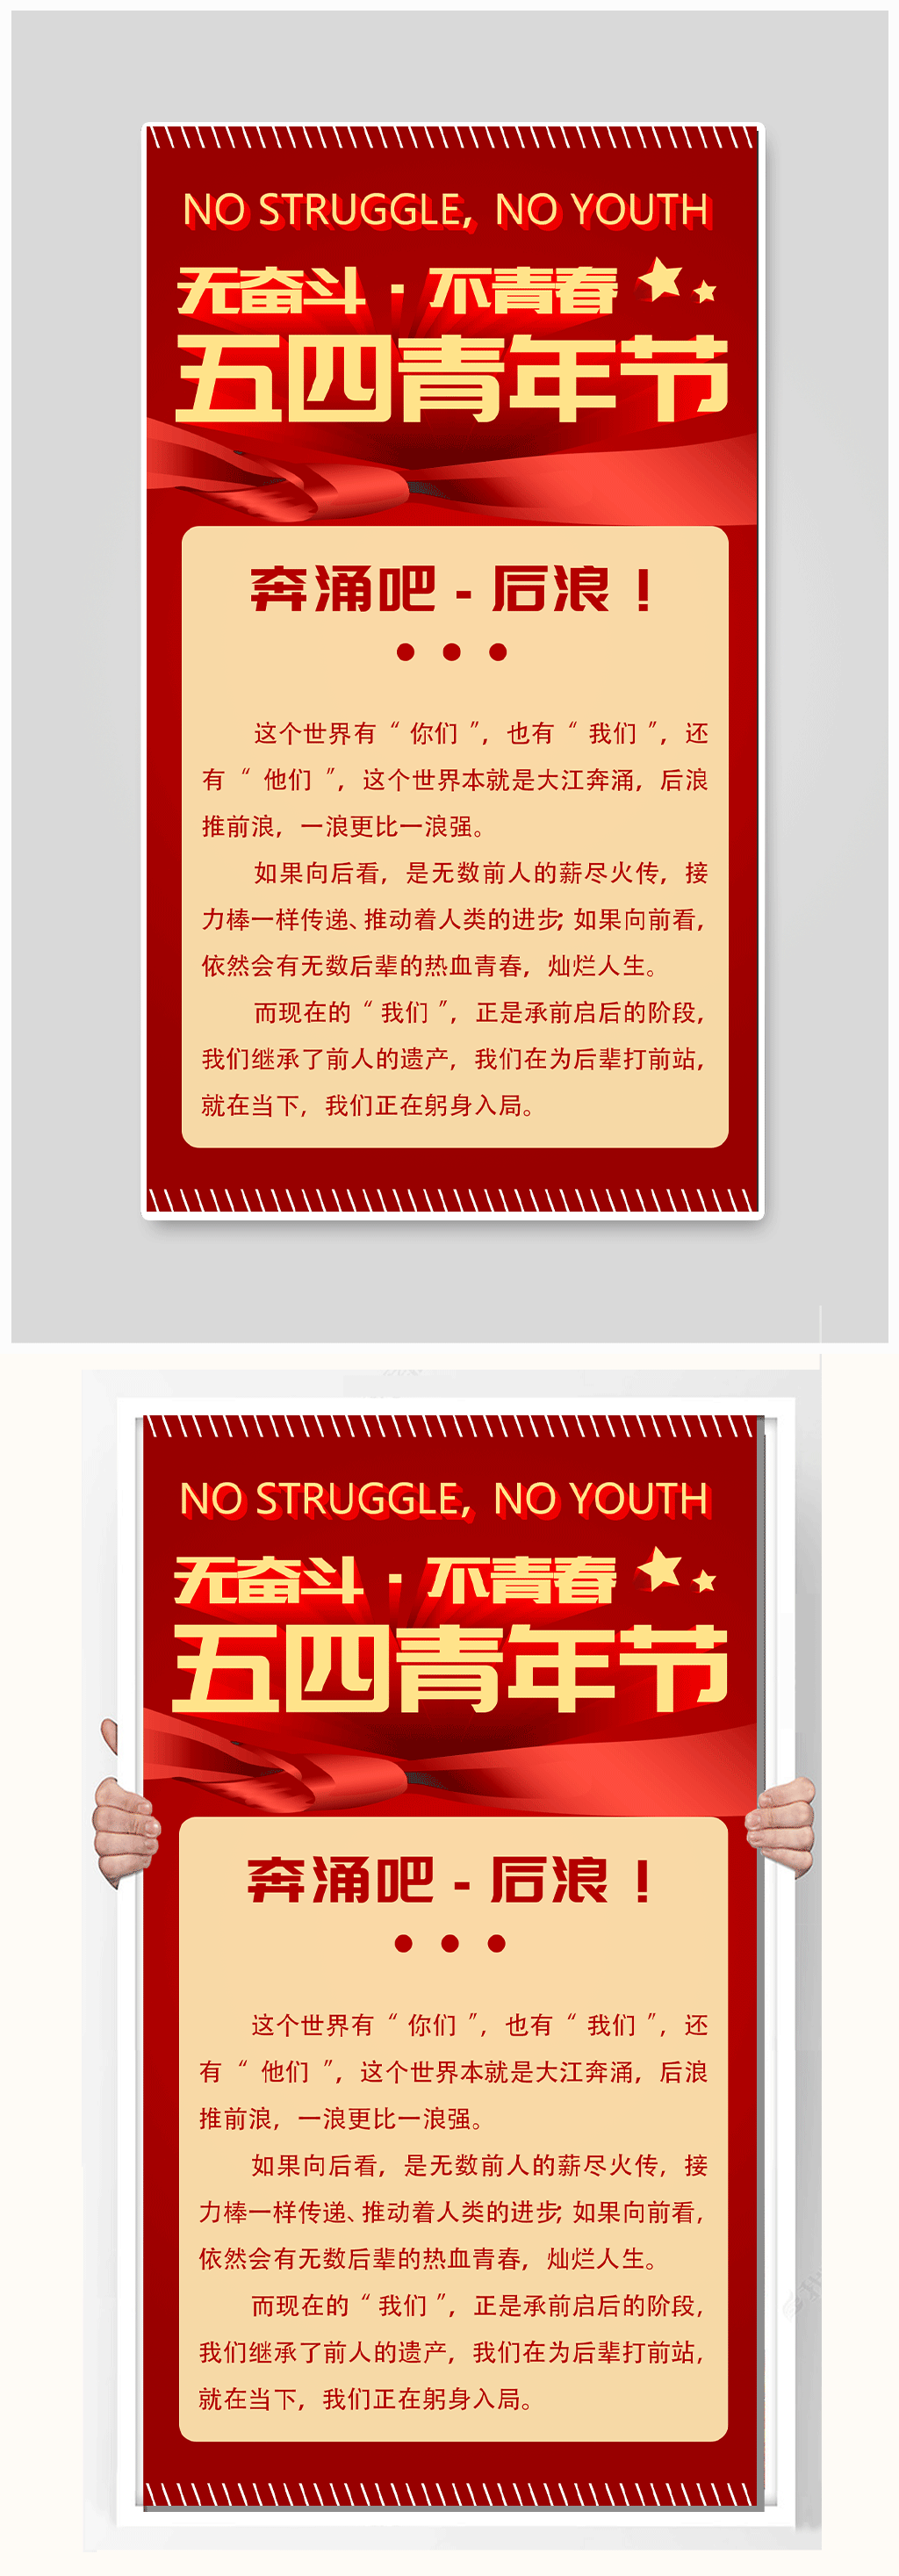 标语文化墙立即下载立即下载炫彩无奋斗不青春54青年节ppt无奋斗不